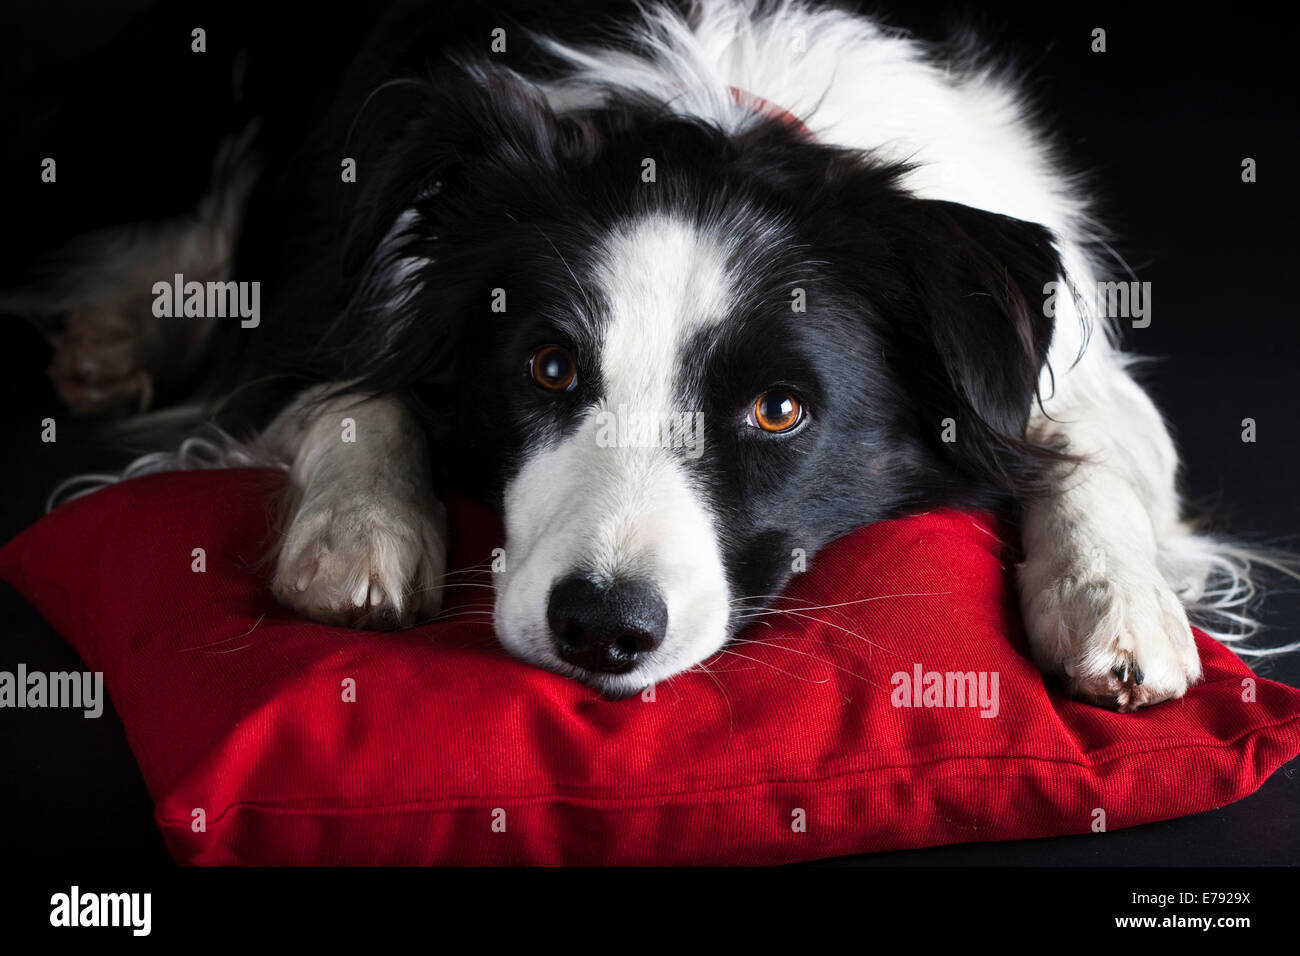 Border Collie, schwarz-weiß, liegend auf einem roten Kissen Stockfoto